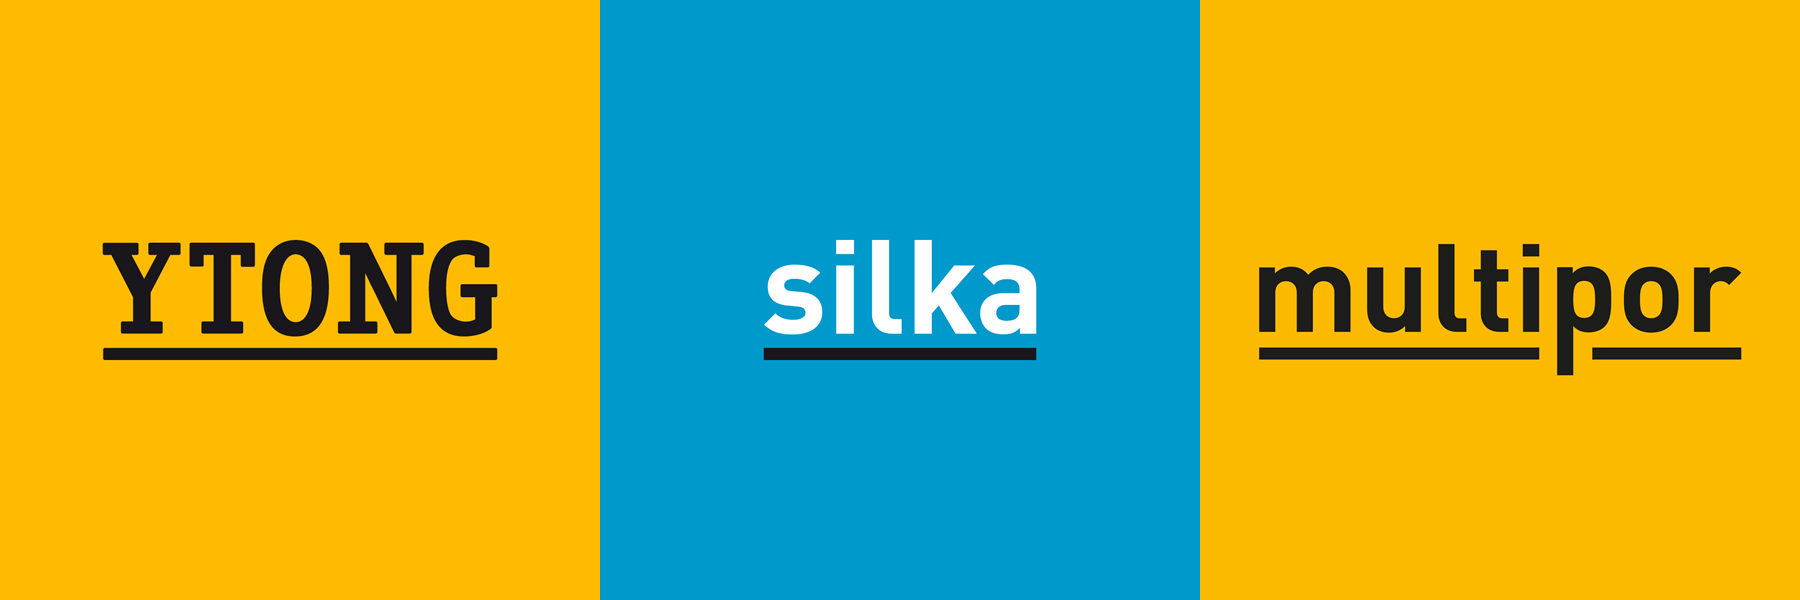 Ytong Silka Multipor Handbesen - Handfeger - Ytong-Silka Online-Shop